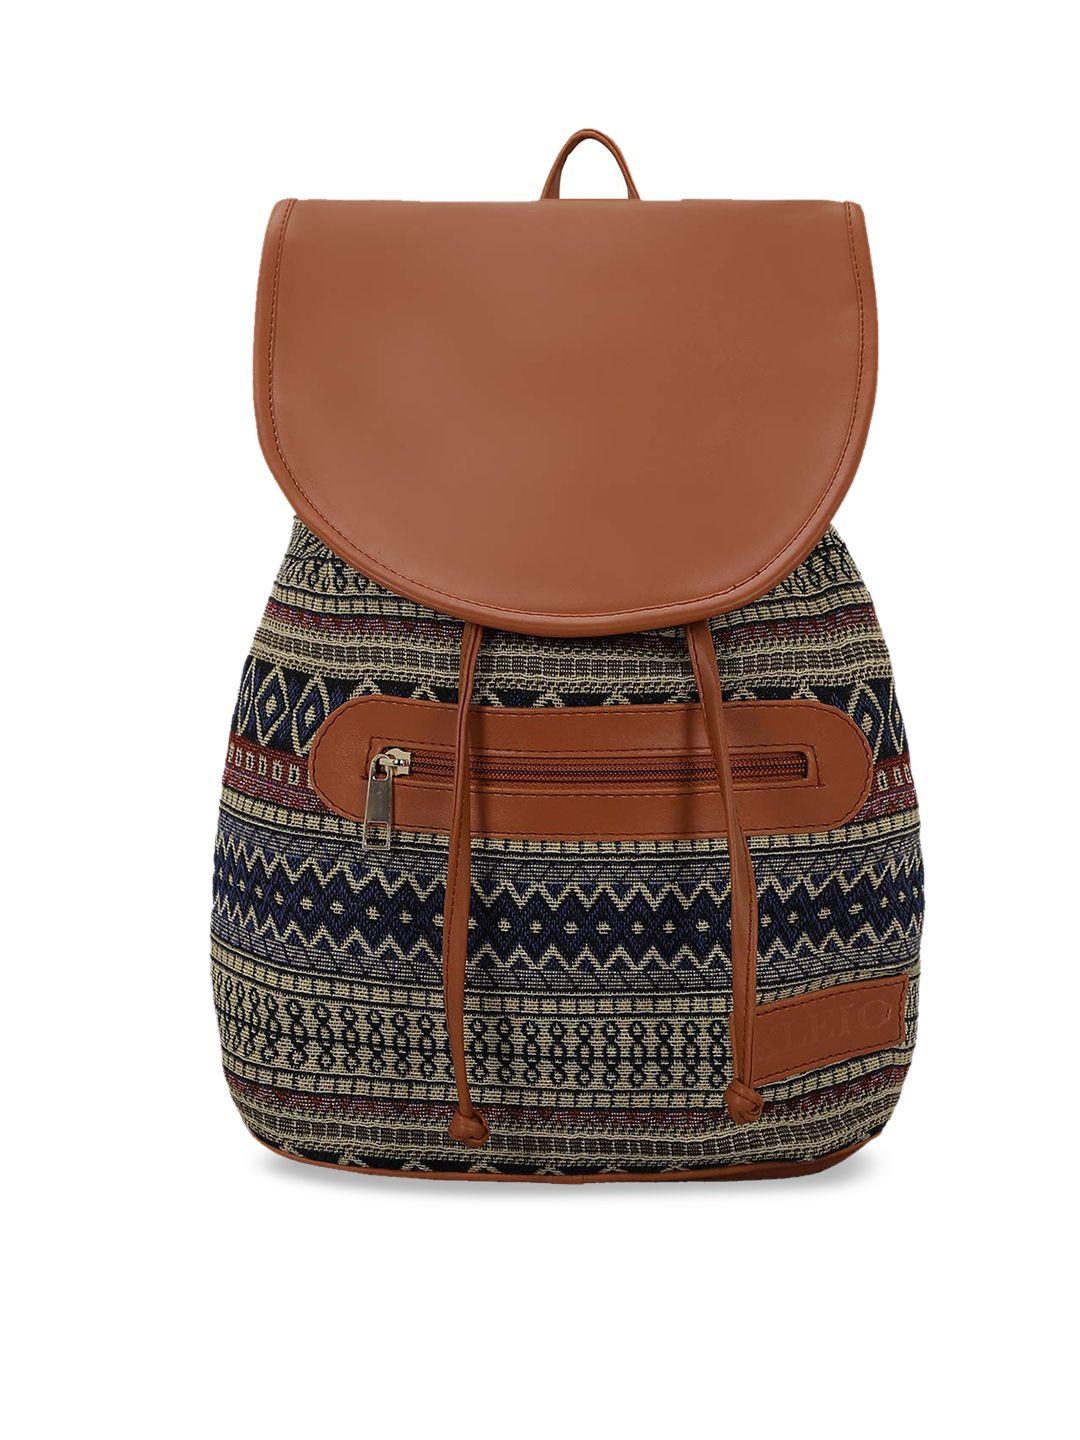 kleio women tan brown & black backpack